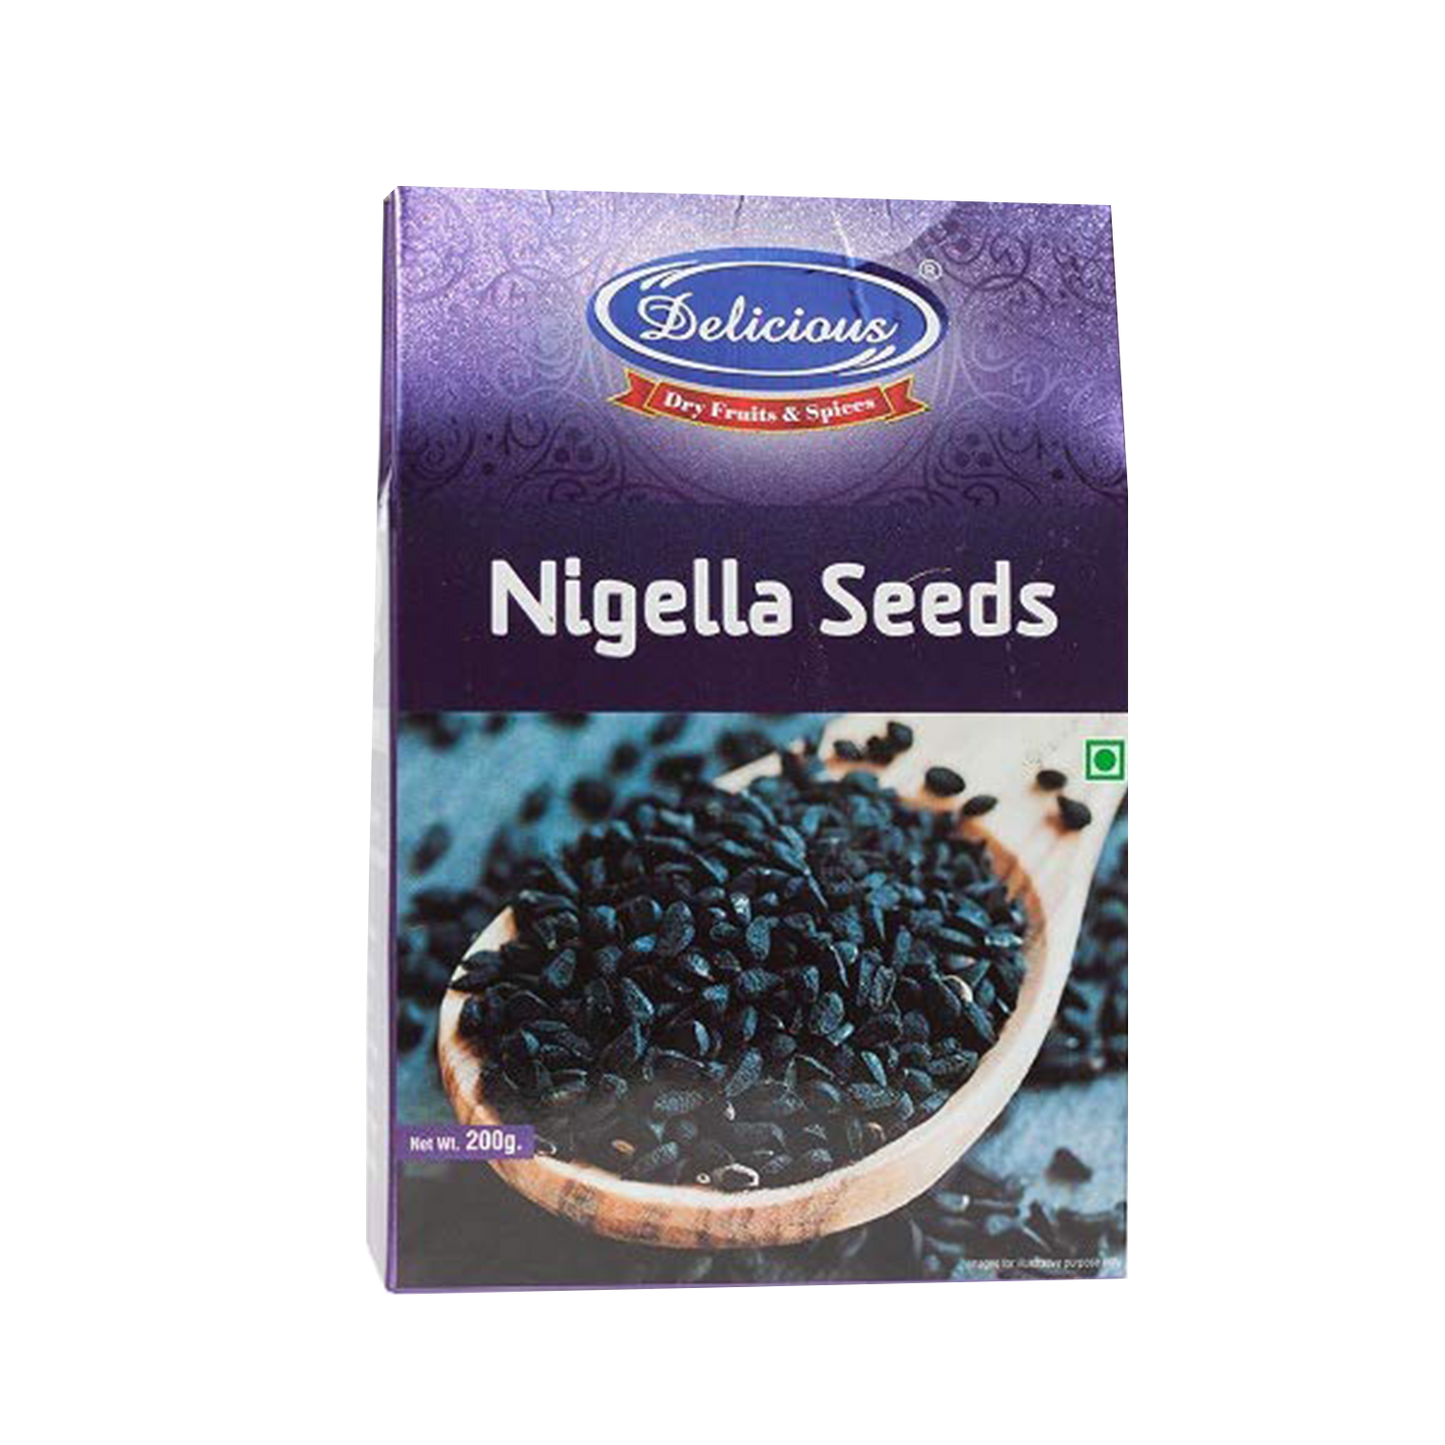 Delicious Nigella Seeds